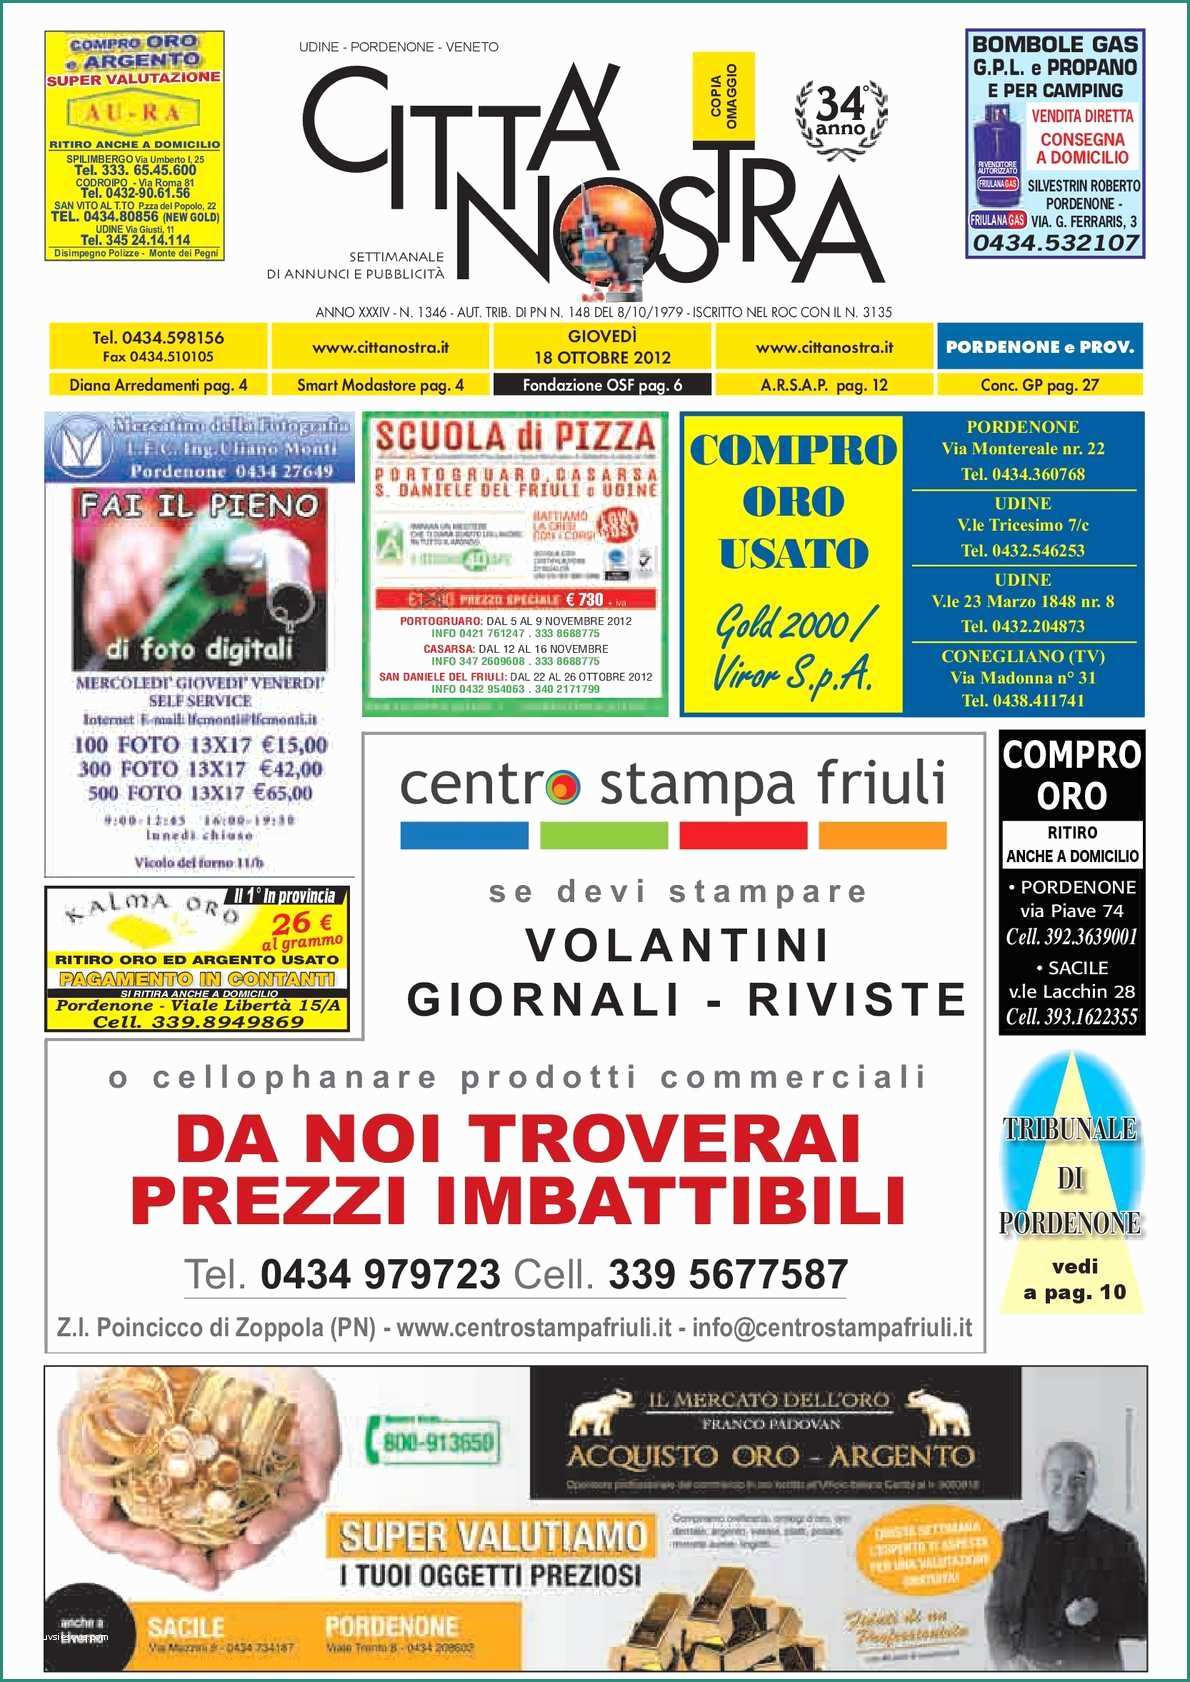 Spaccio Alimentare Volantino E Calaméo Citt  Nostra Pordenone Del 18 10 2012 N 1346